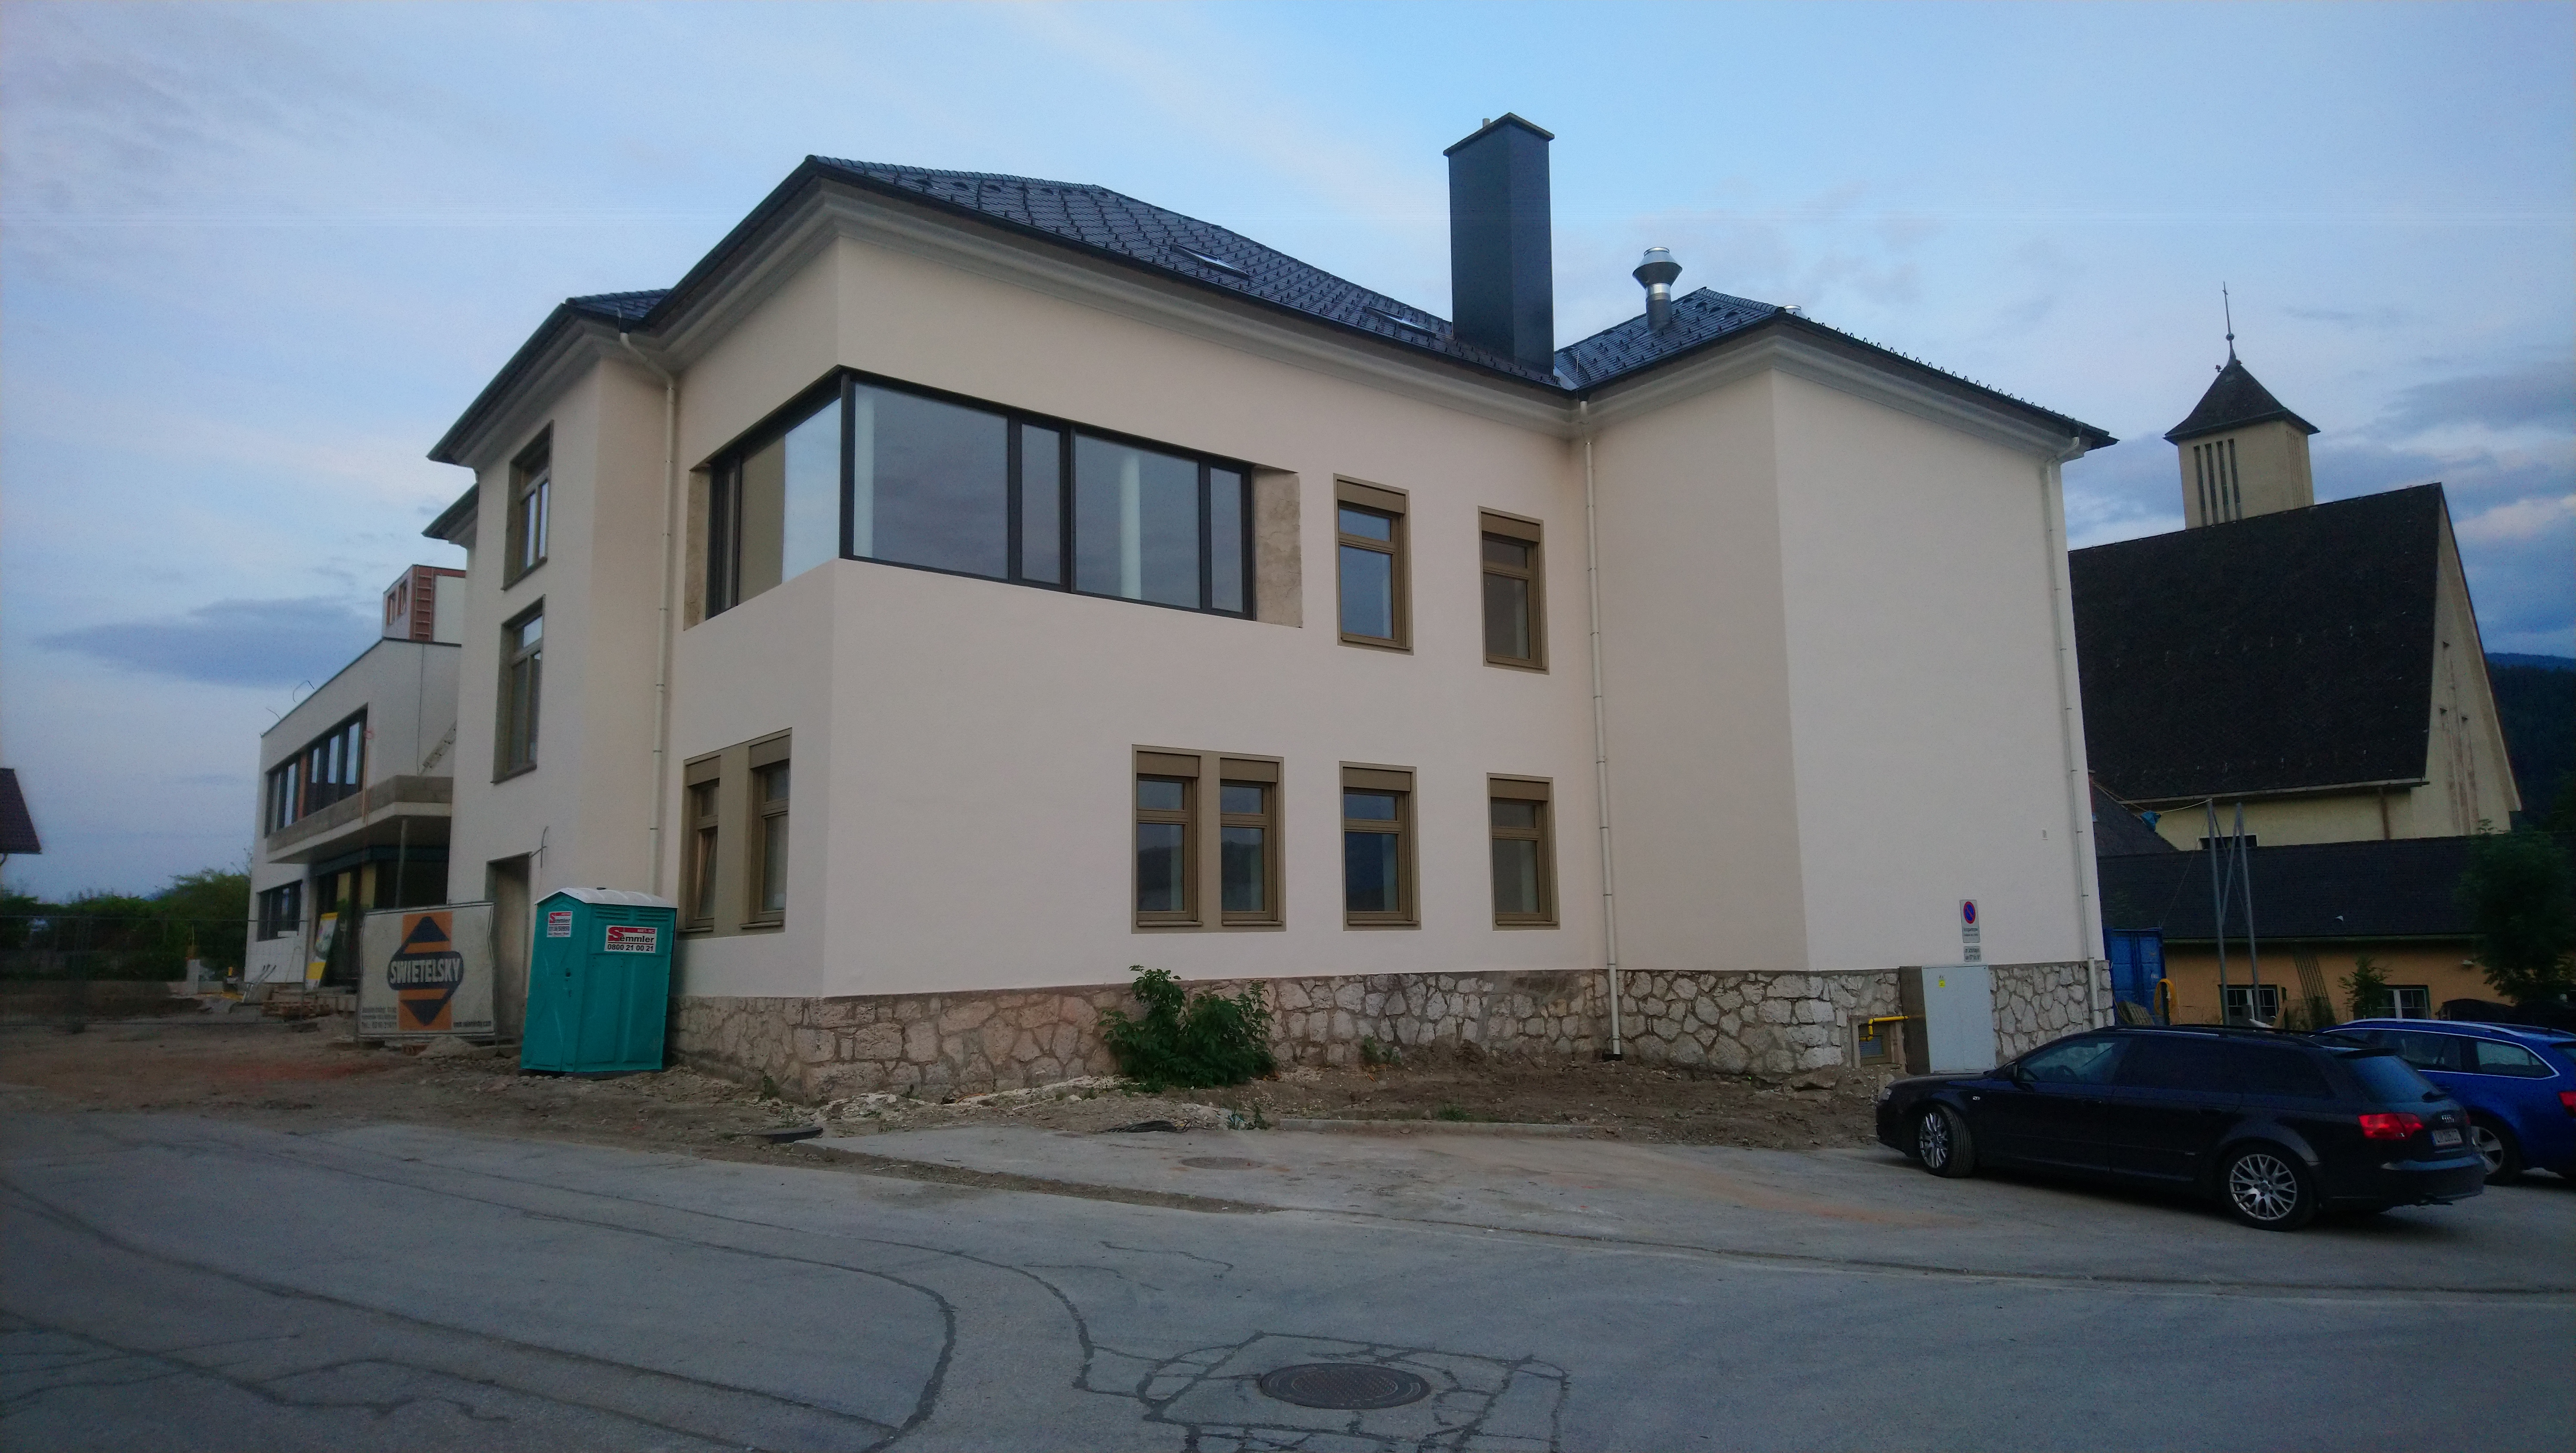 Volksschule Stainach-Pürgg - Bygningskonstruksjon